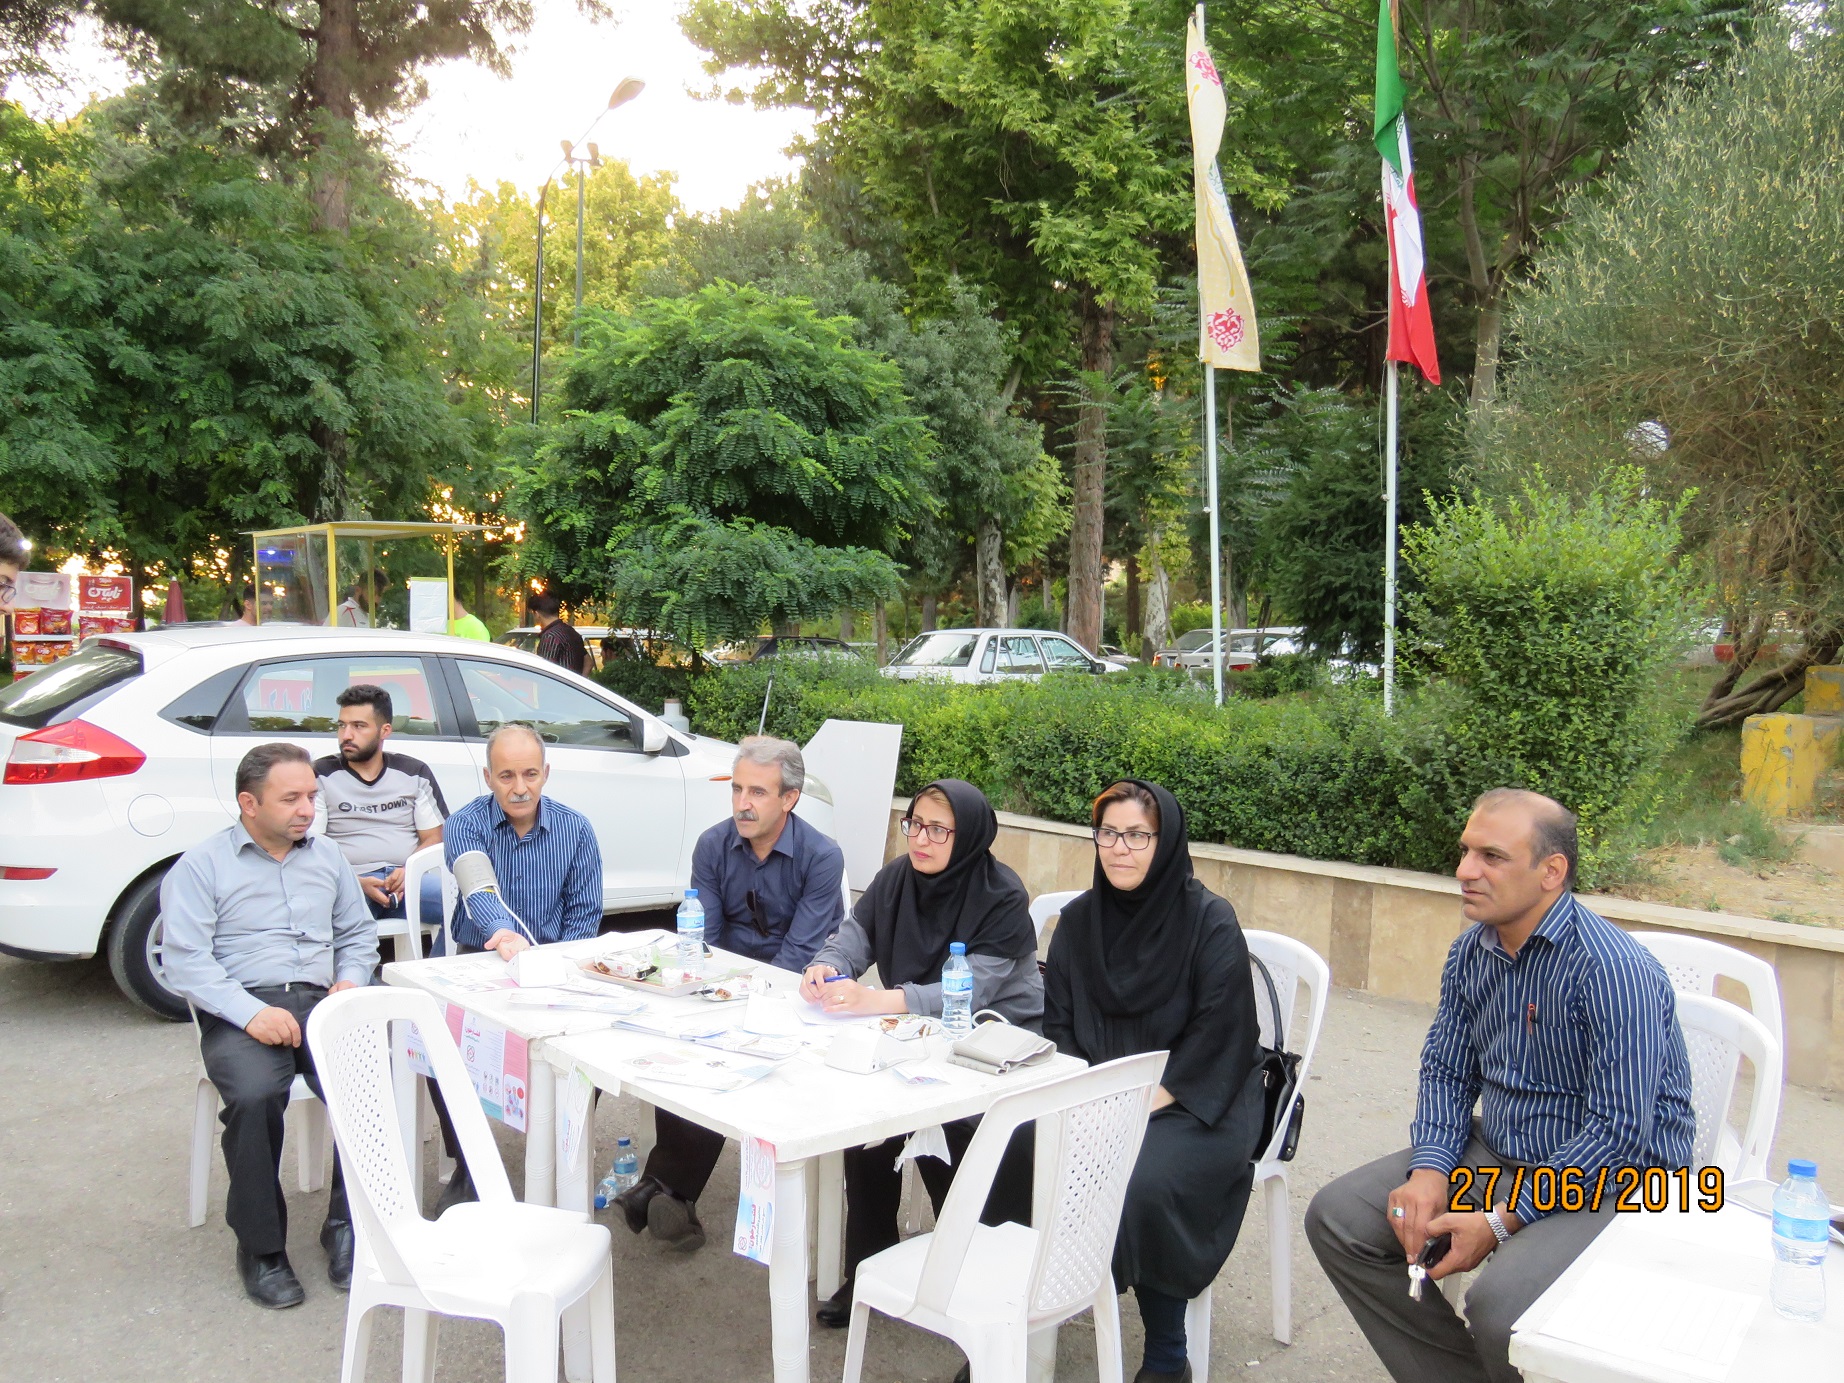 استقرار تیمها سیار در ایام تعطیل در سطح شهر کرمانشاه 11